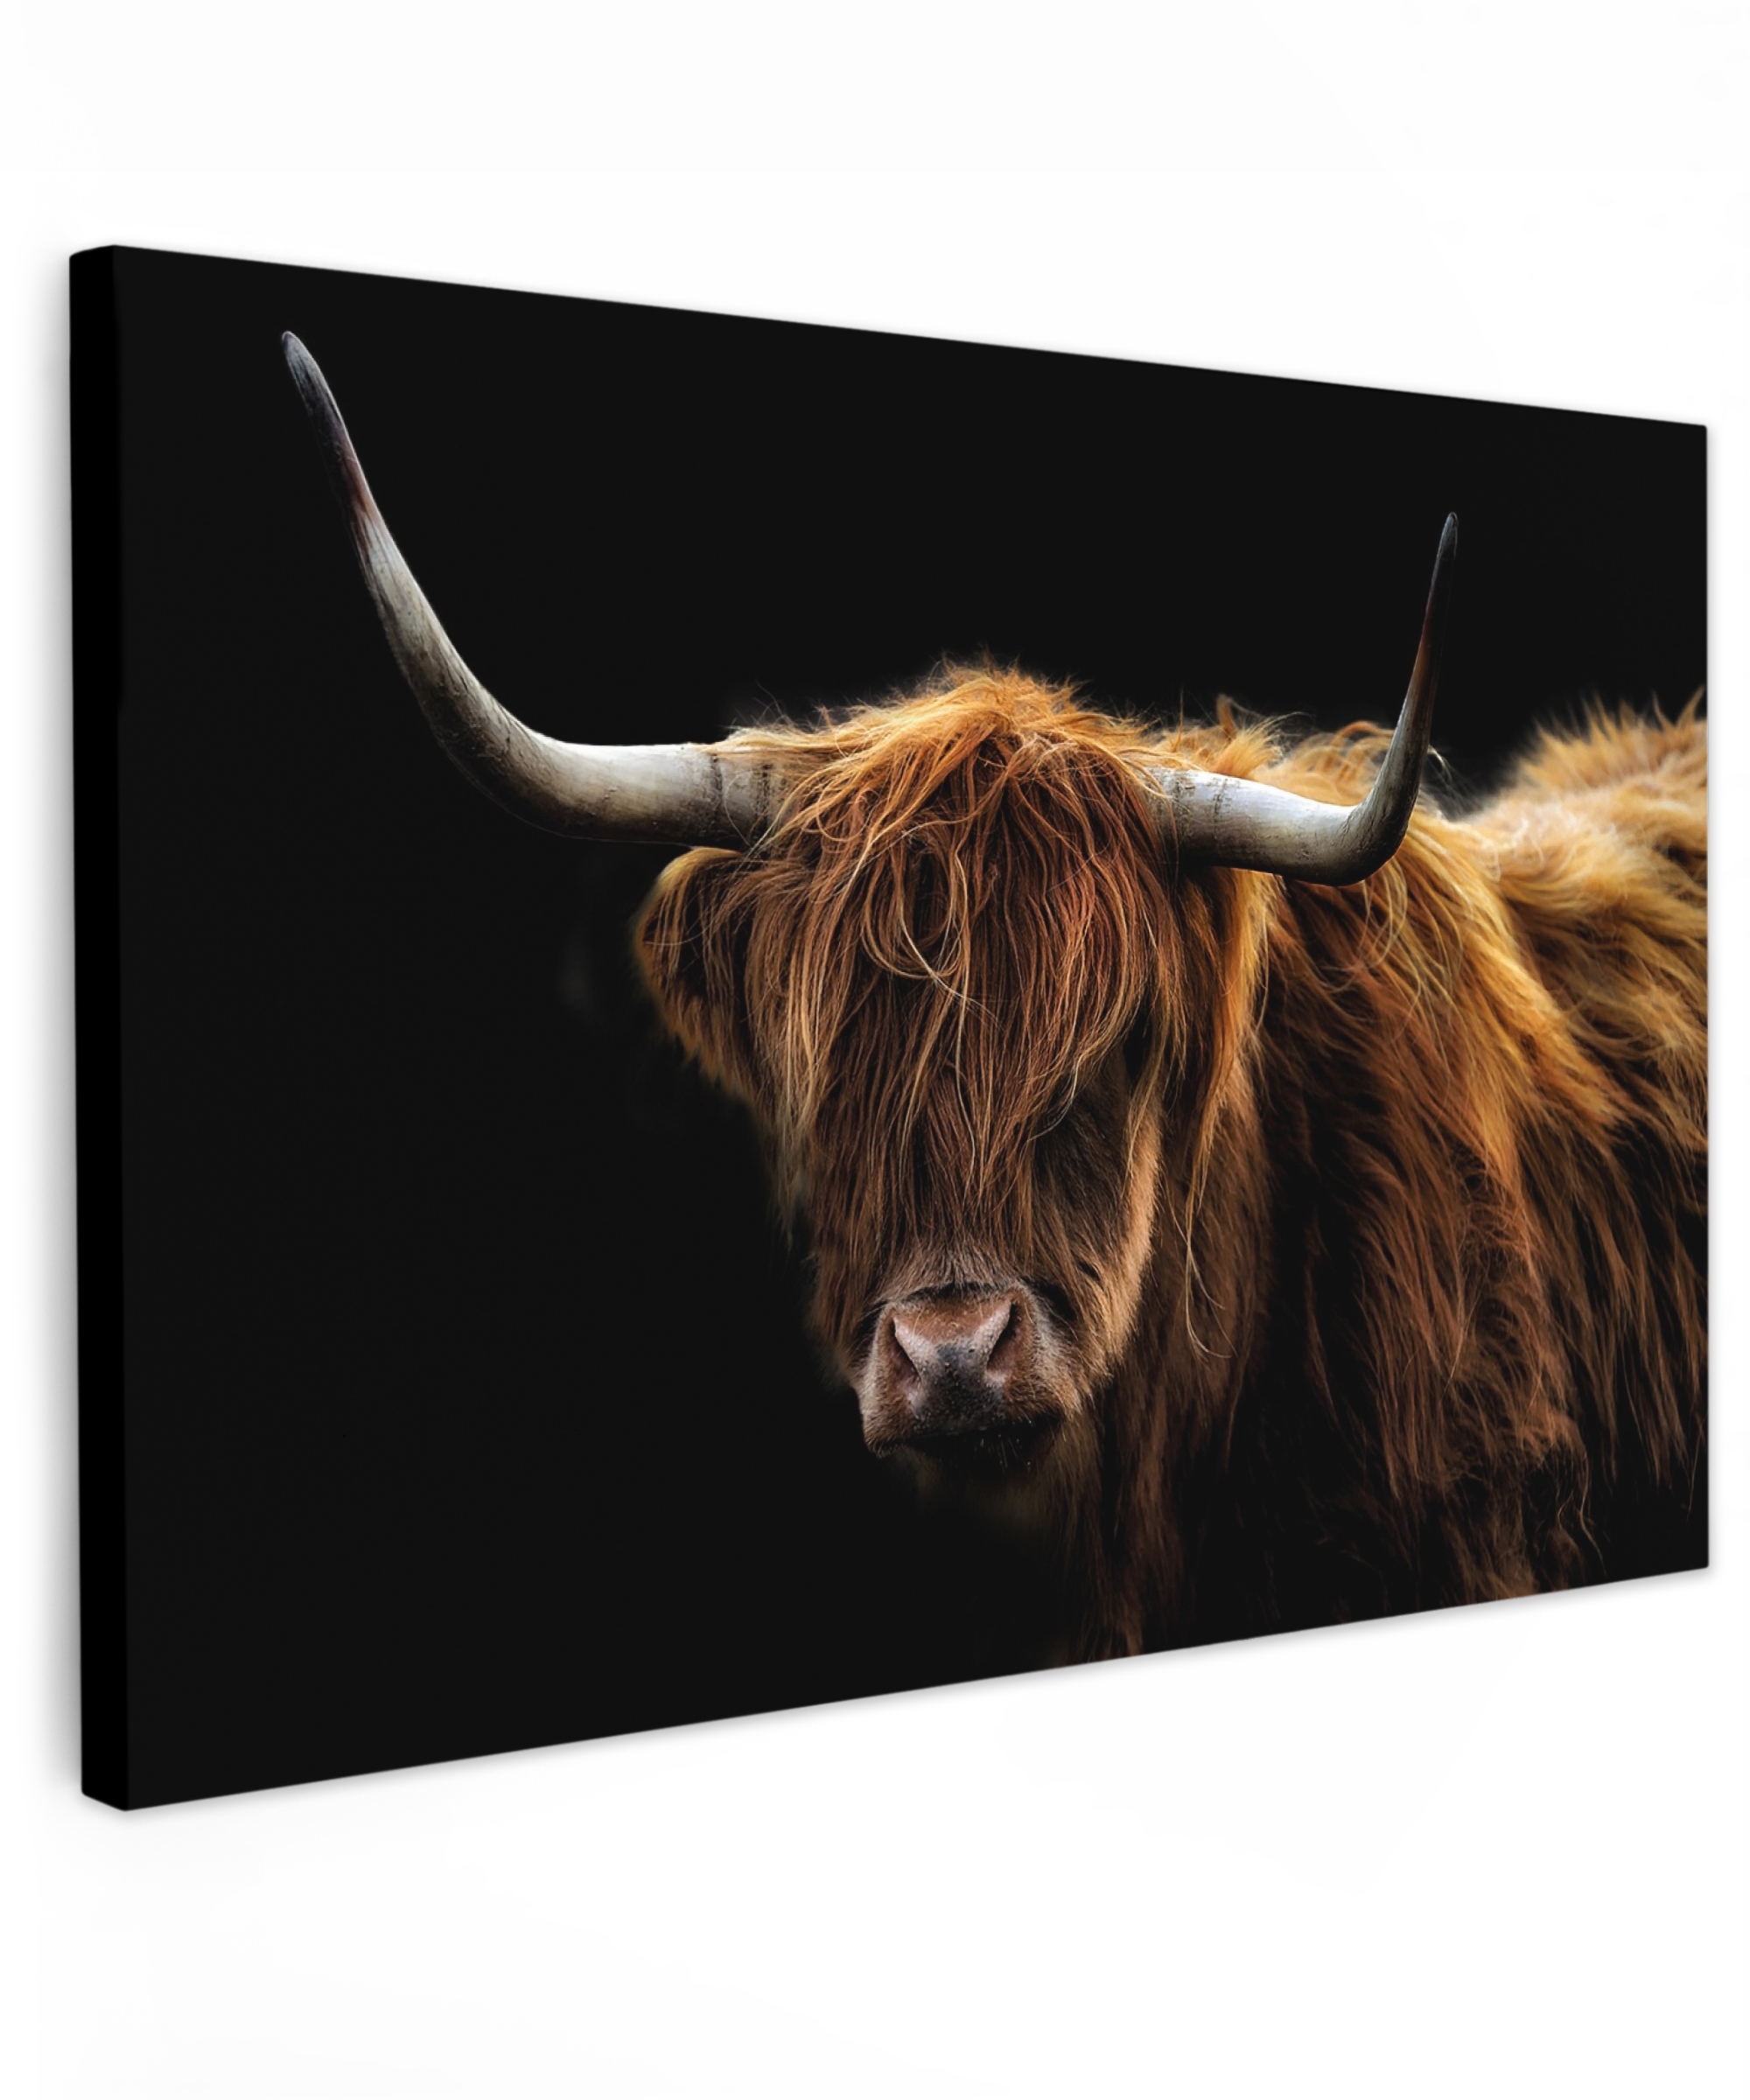 Tableau sur toile - Highlander écossais - Cornes - Noir - Animaux - Nature - Sauvage - Vache